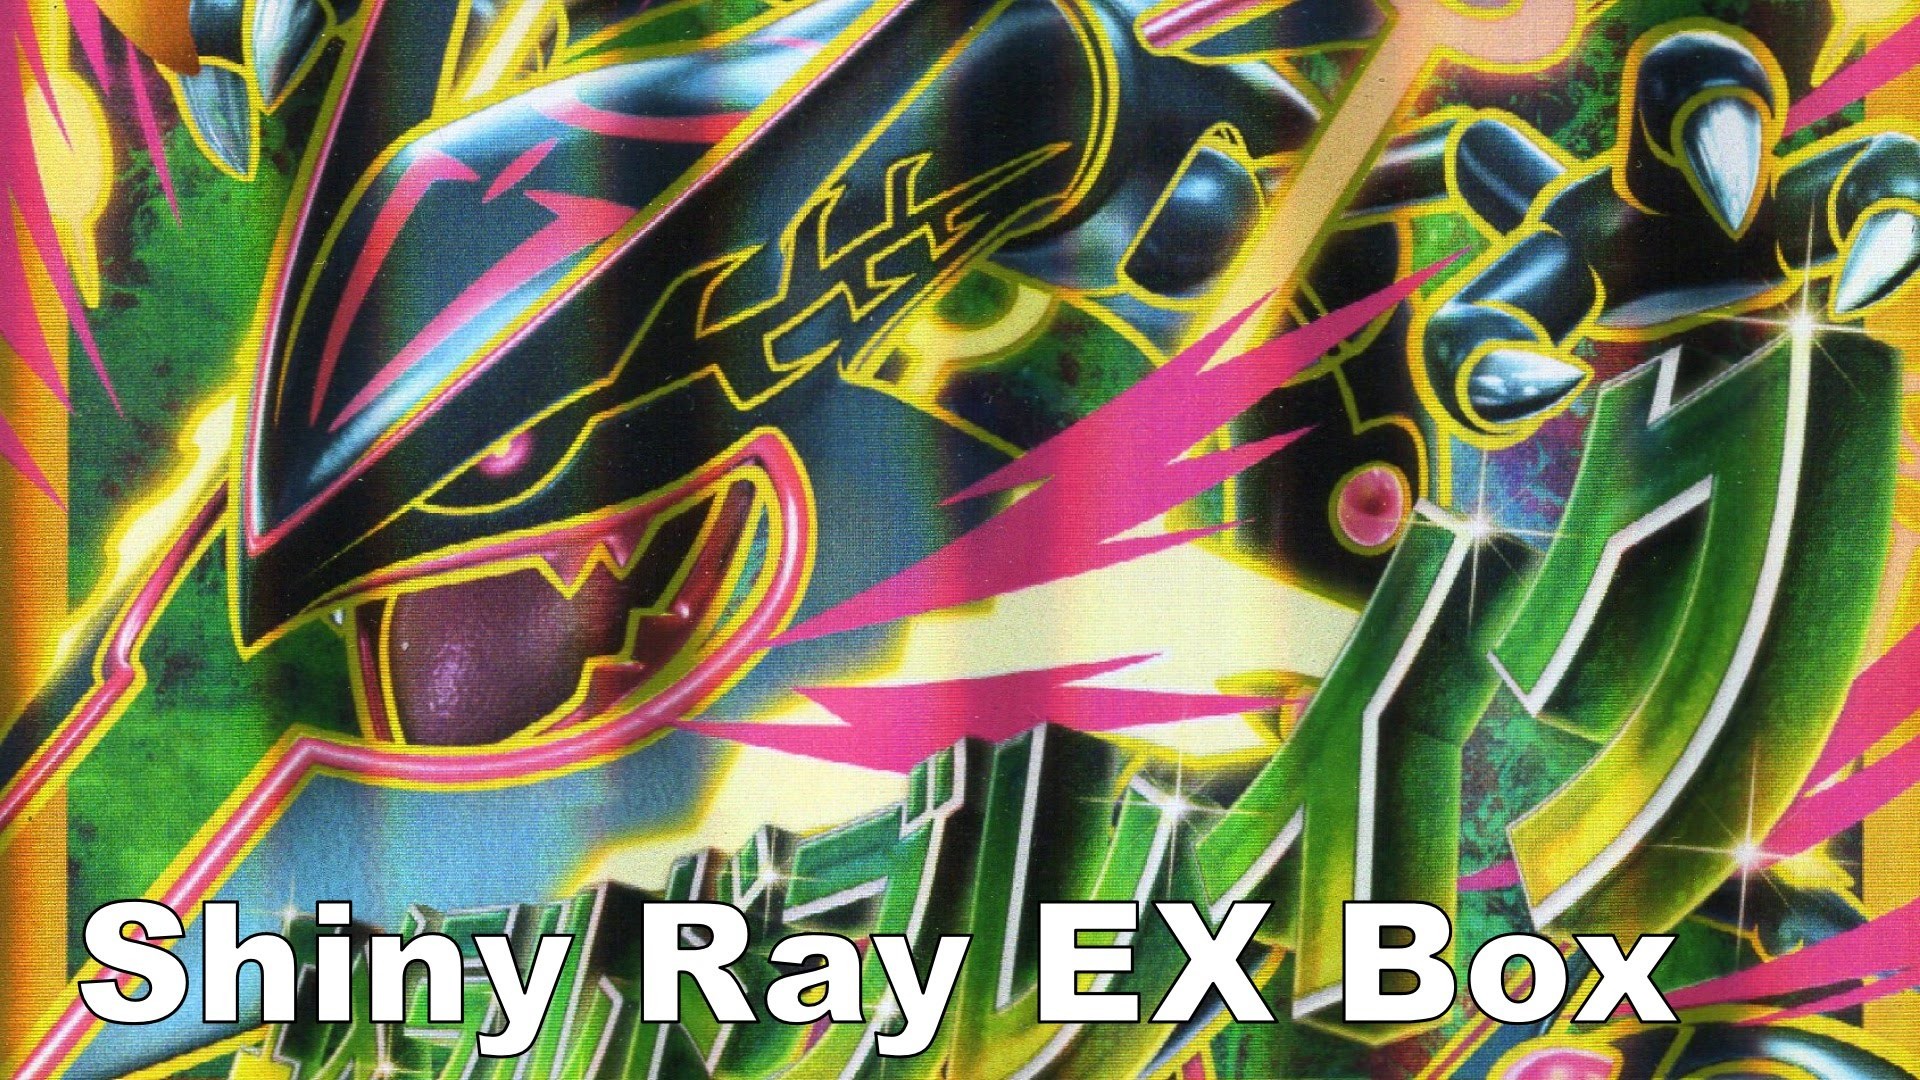 1920x1080 Pokemon Shiny Rayquaza EX Box w/ Shiny Mega Rayquaza Jumbo Card - YouTube